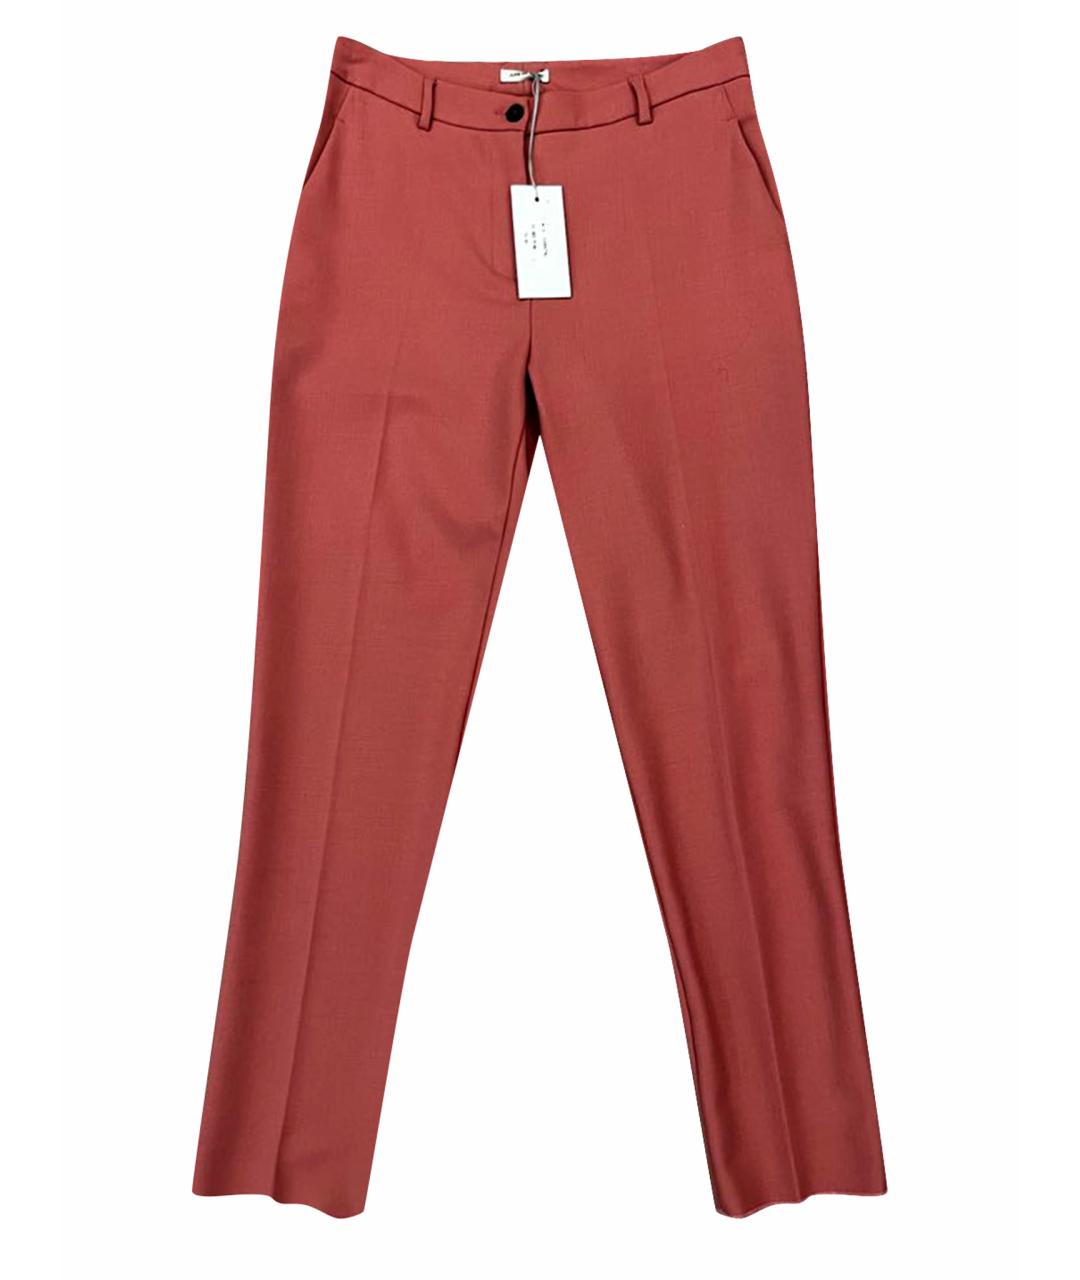 JUPE DE SATIN Розовые шерстяные брюки узкие, фото 1